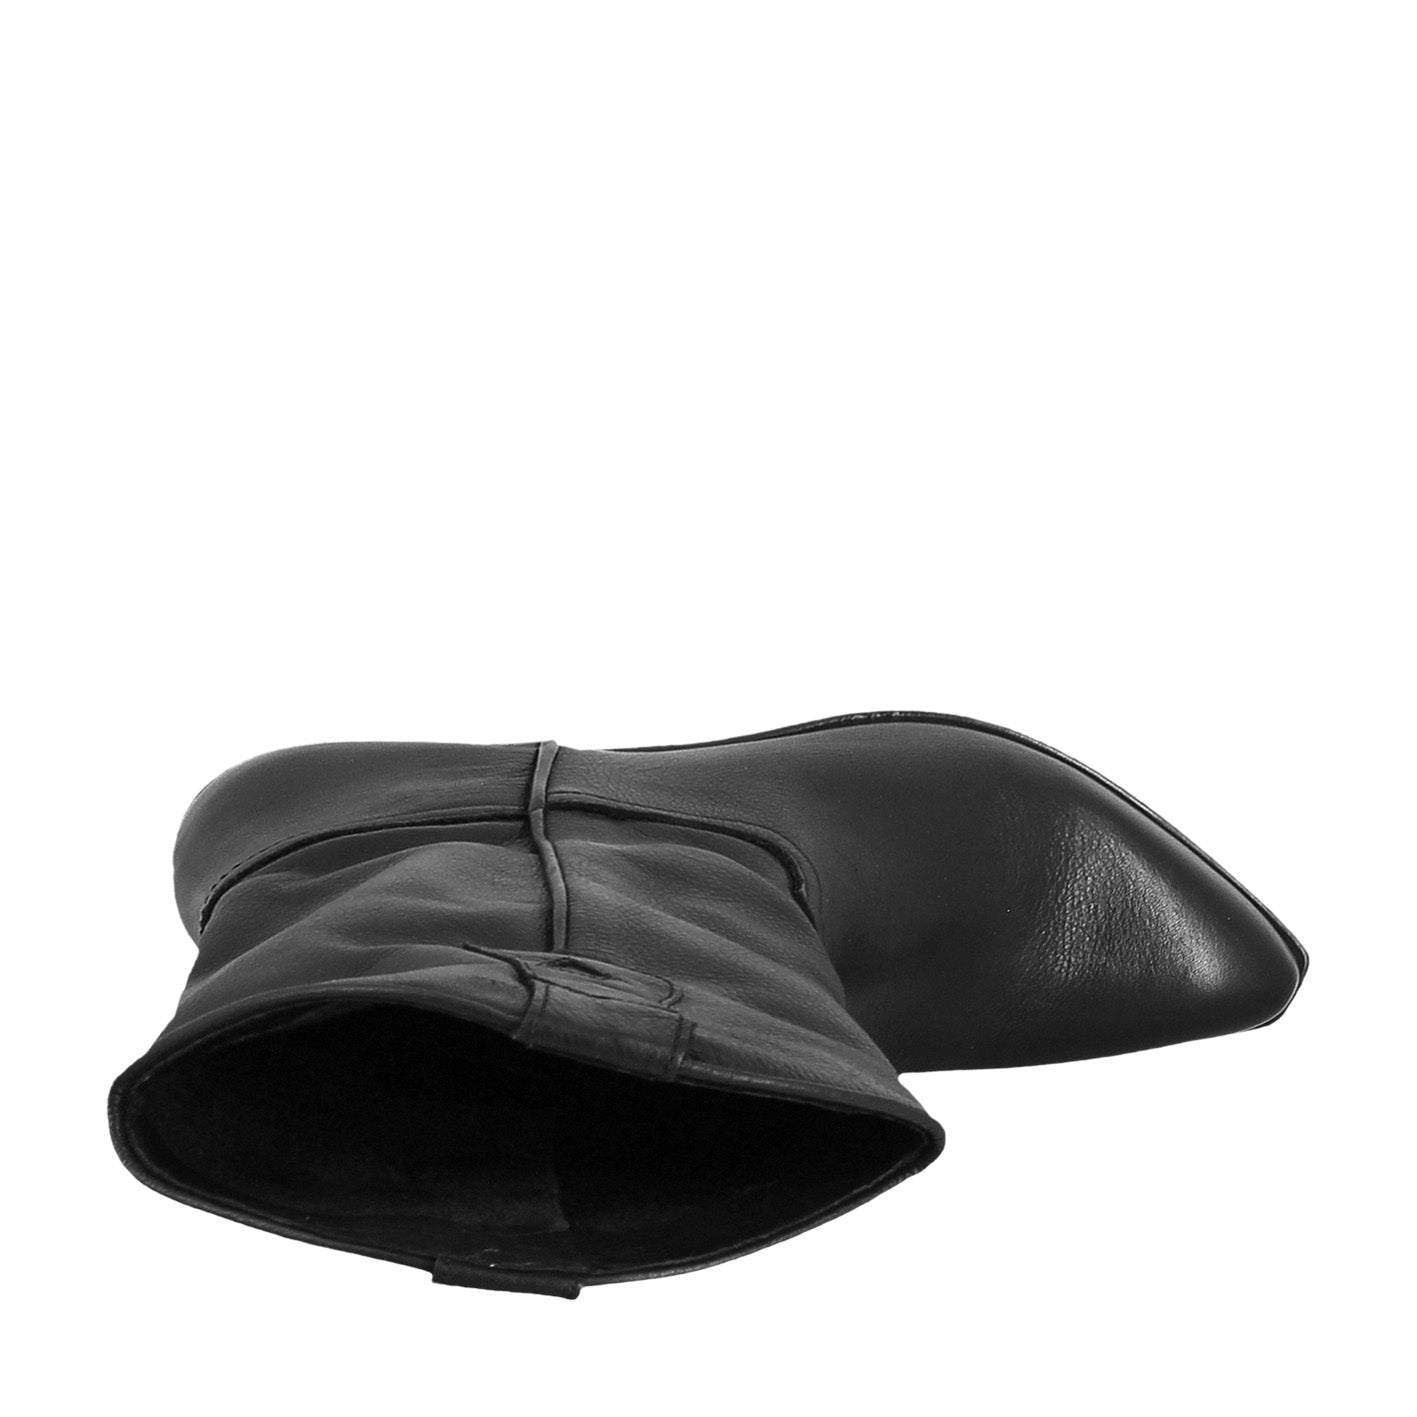 Bottes texanes pour femme non doublées en cuir vintage noir